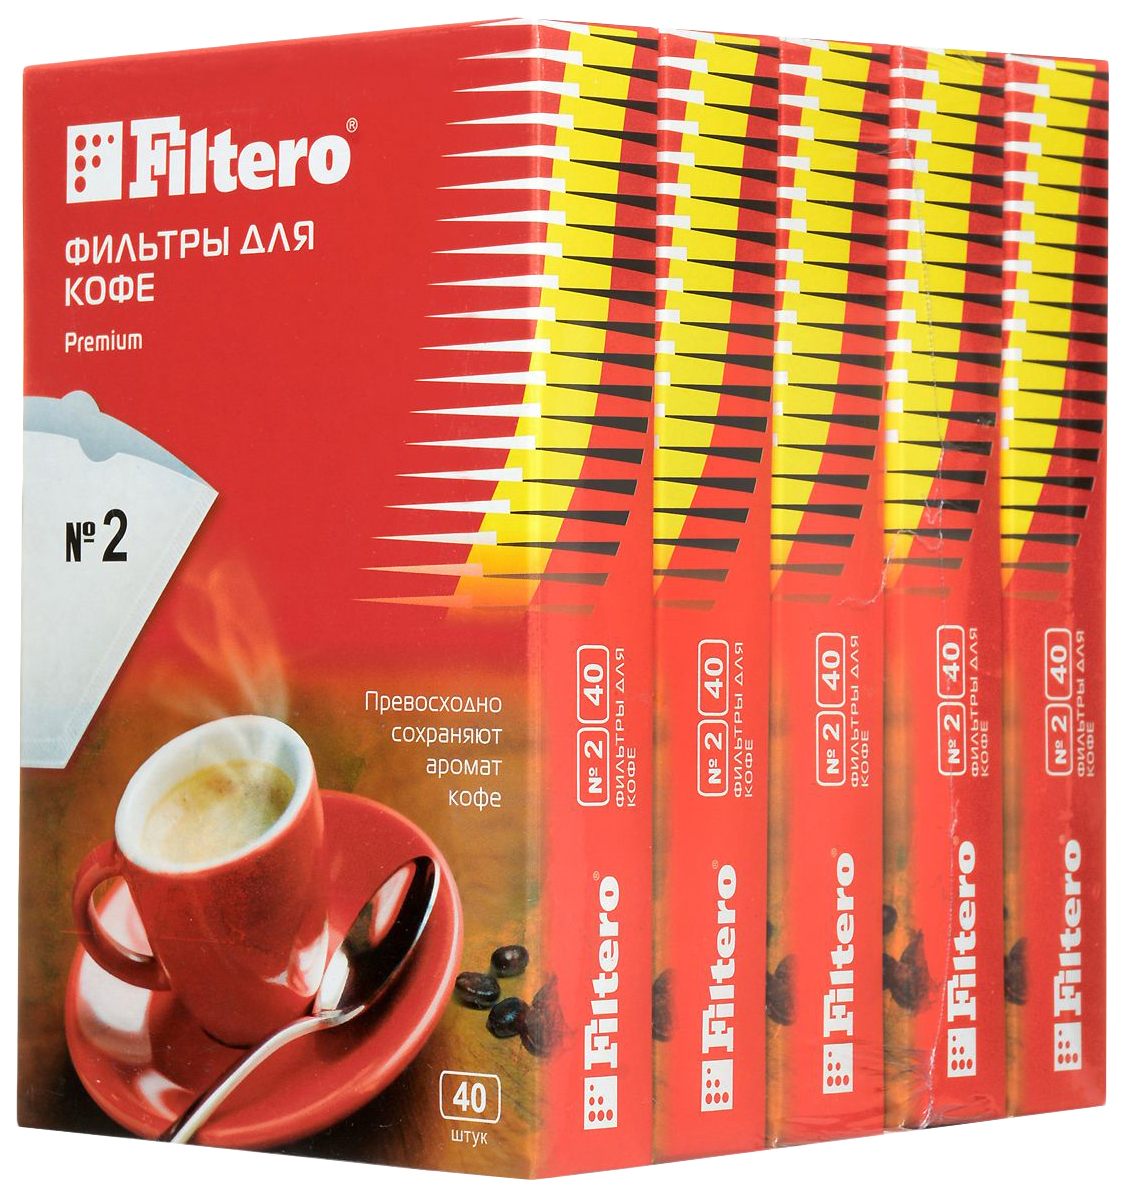 Фильтр Filtero Premium №2, купить в Москве, цены в интернет-магазинах на Мегамаркет